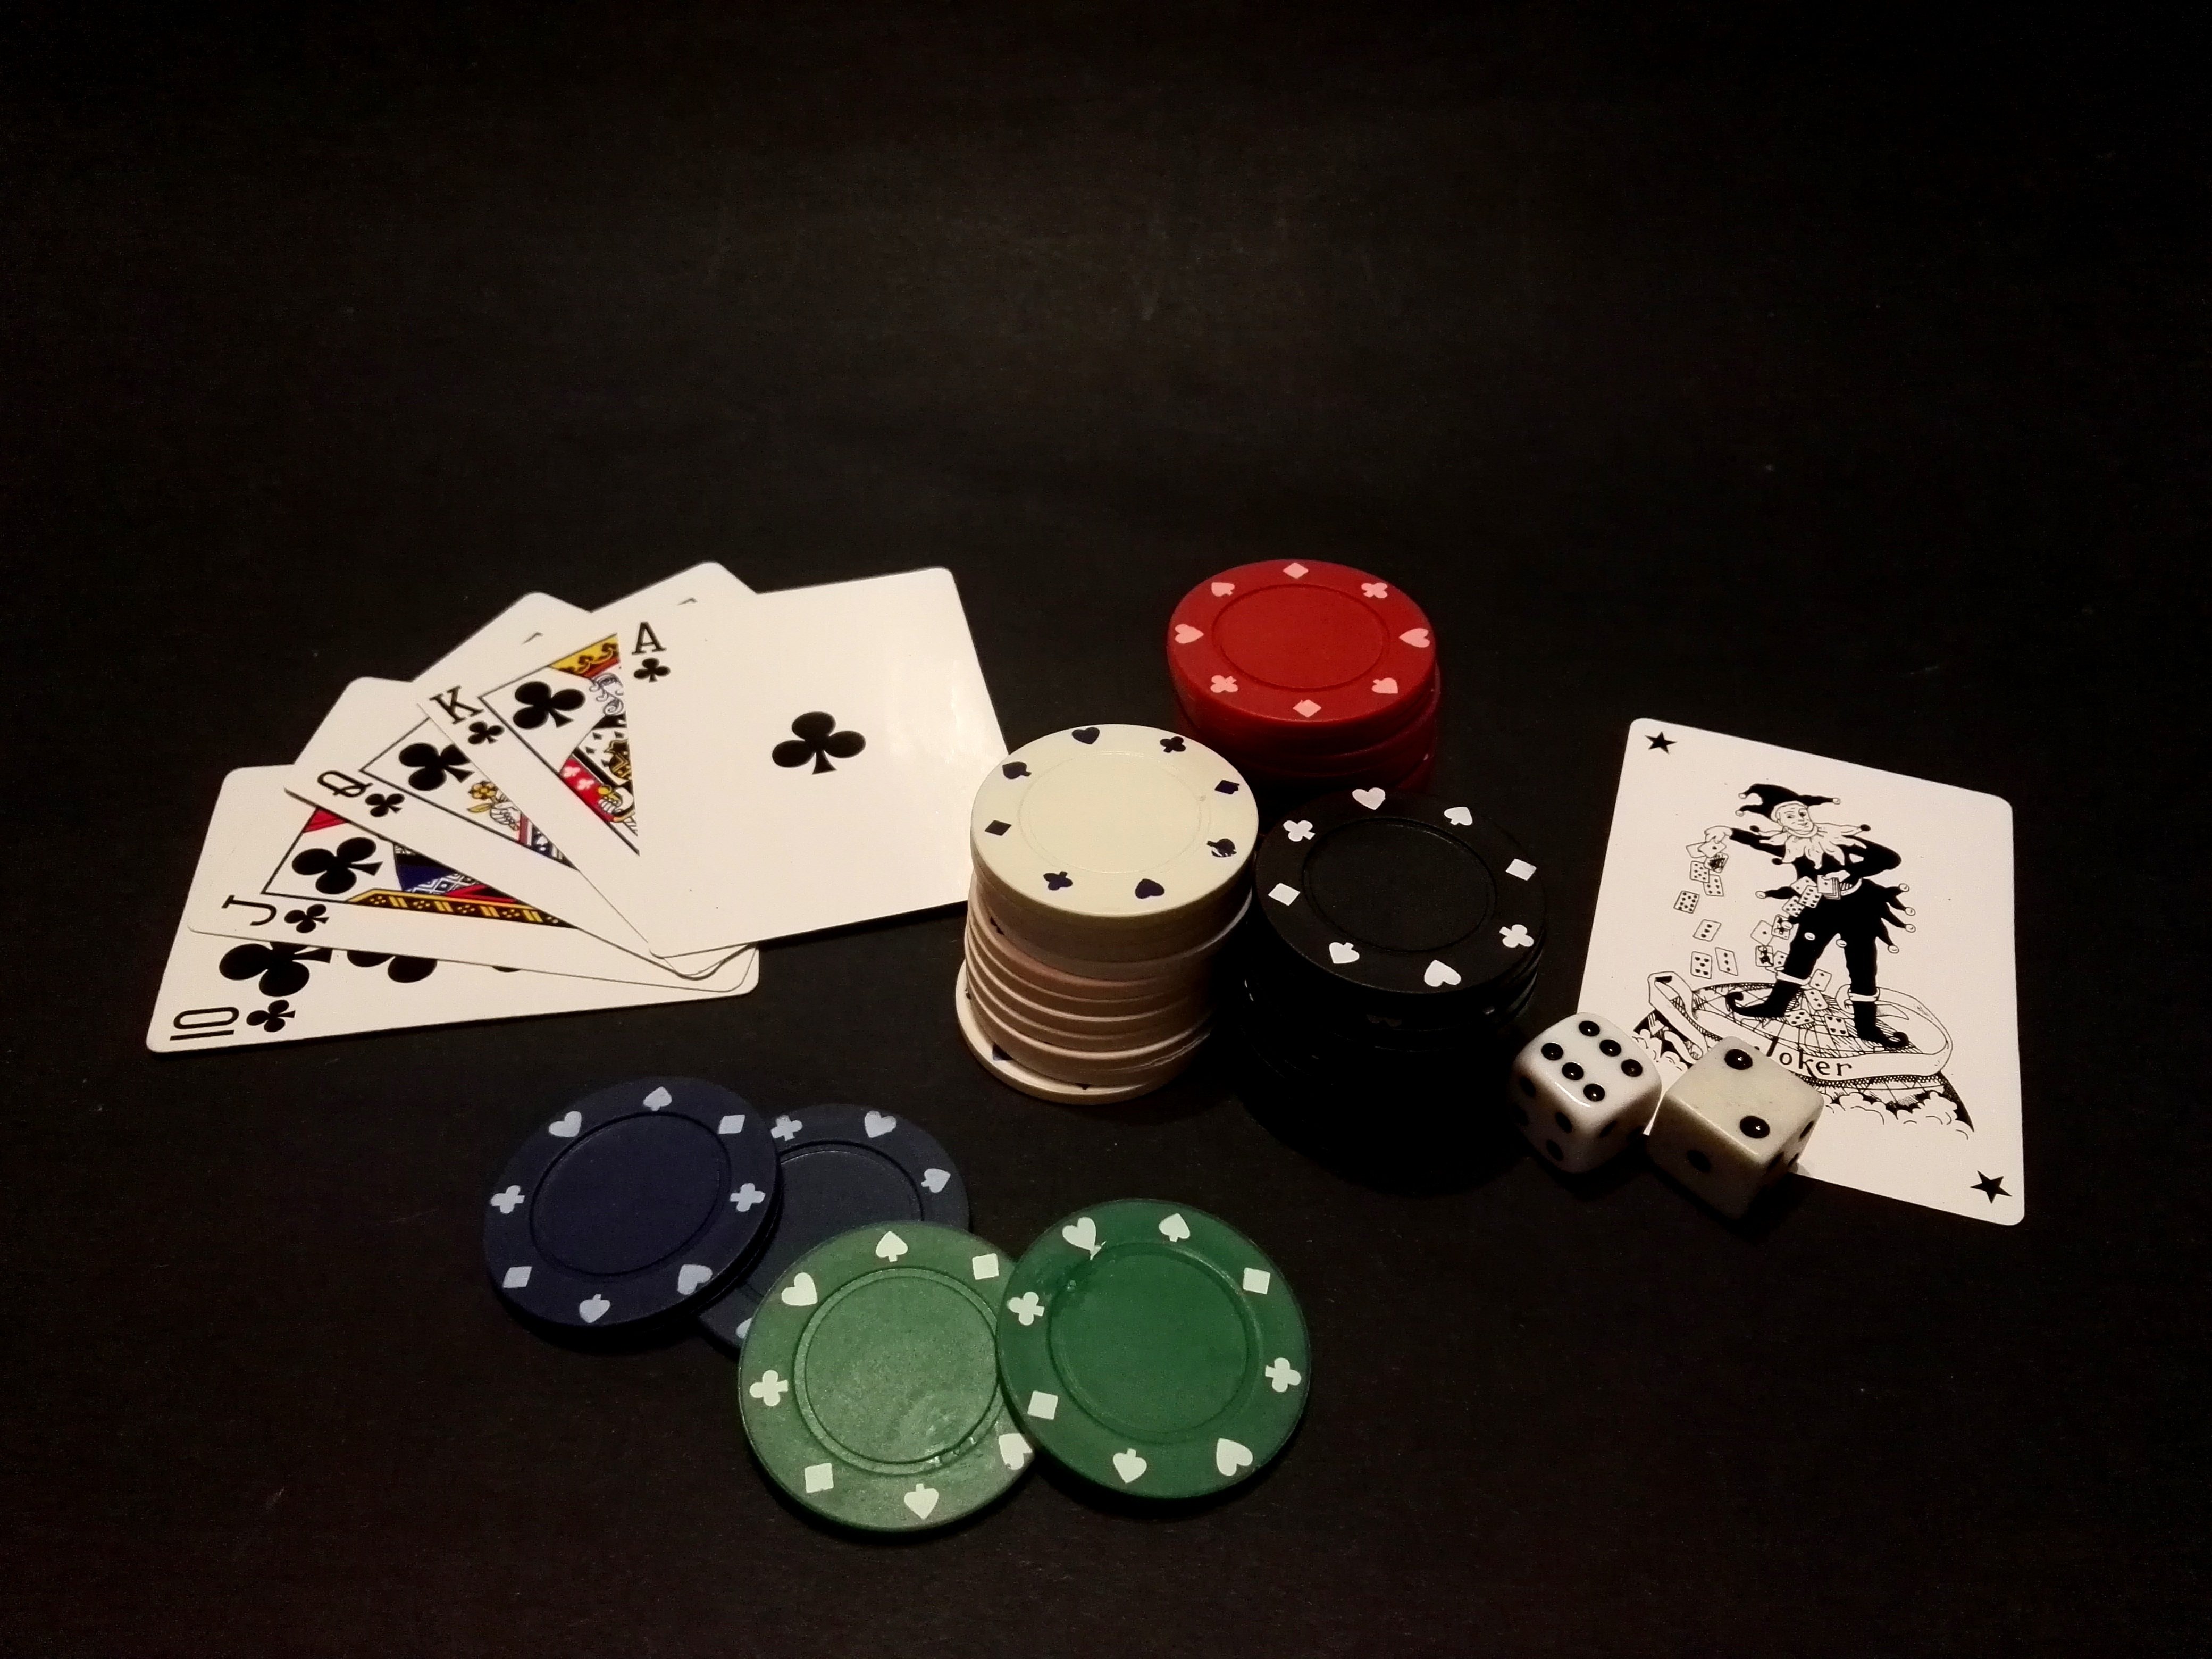 Играть в карты 18. Покер. Игральные фишки для покера. Казино карточные столы. Игра Покер карточная.